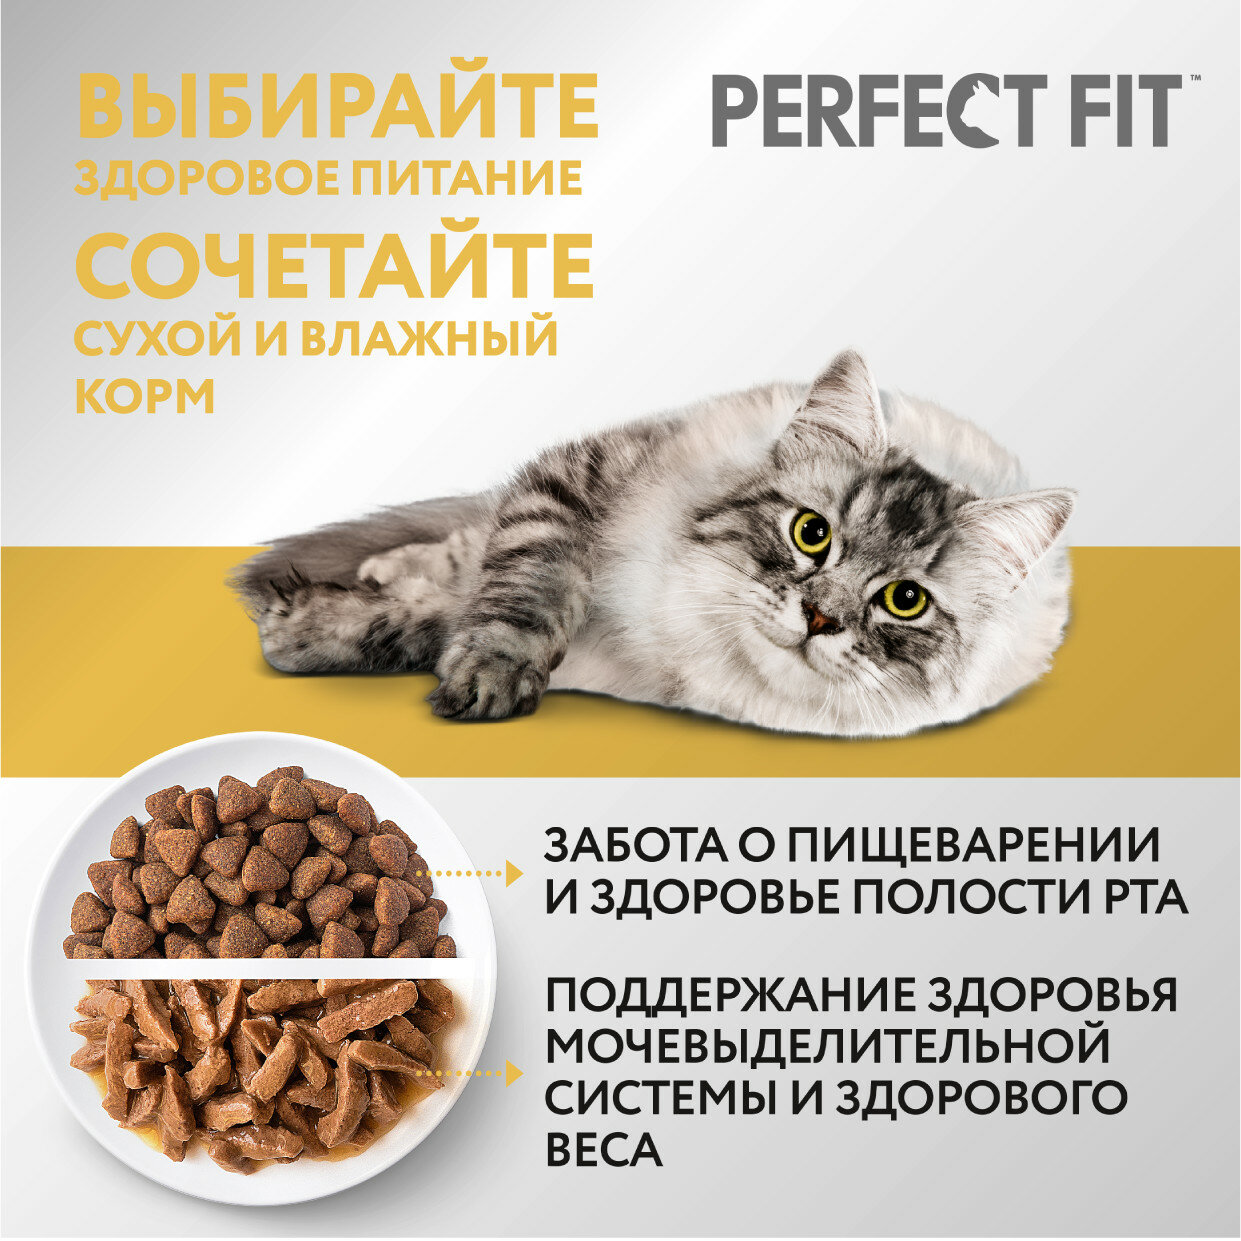 Корм для кошек PERFECT FIT - фото №11